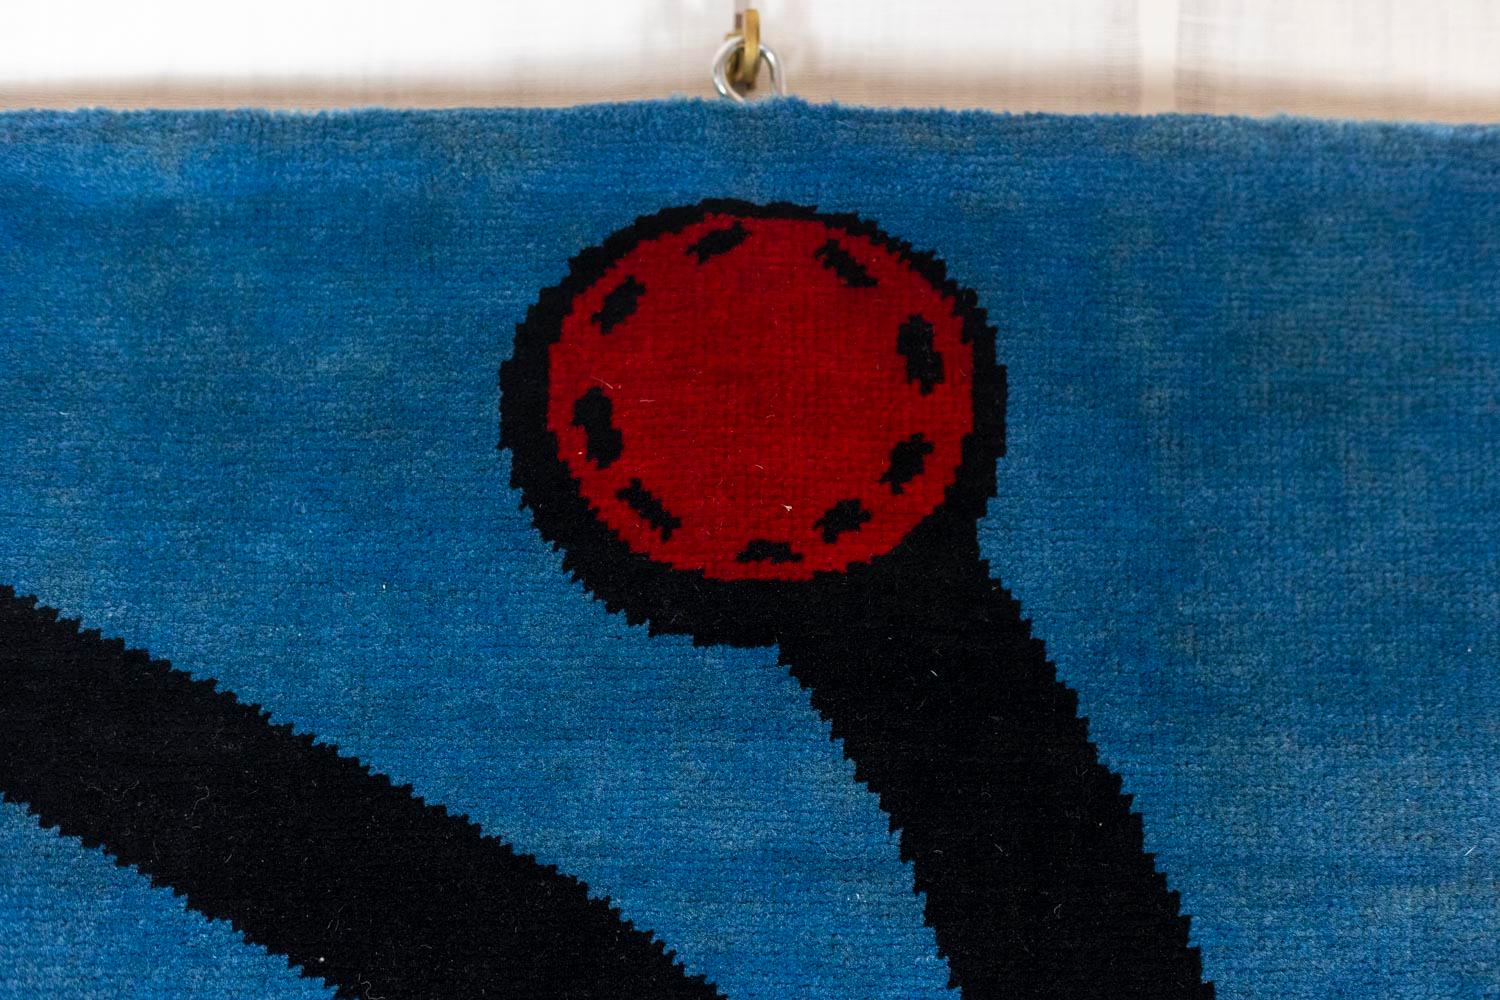 Dans le style de Joan Miró.

Tapis, ou tapisserie, en 100% laine mérinos, réalisé à la main avec des teintures naturelles.

Travail contemporain.

Dimensions : H 200 x L 150 cm.